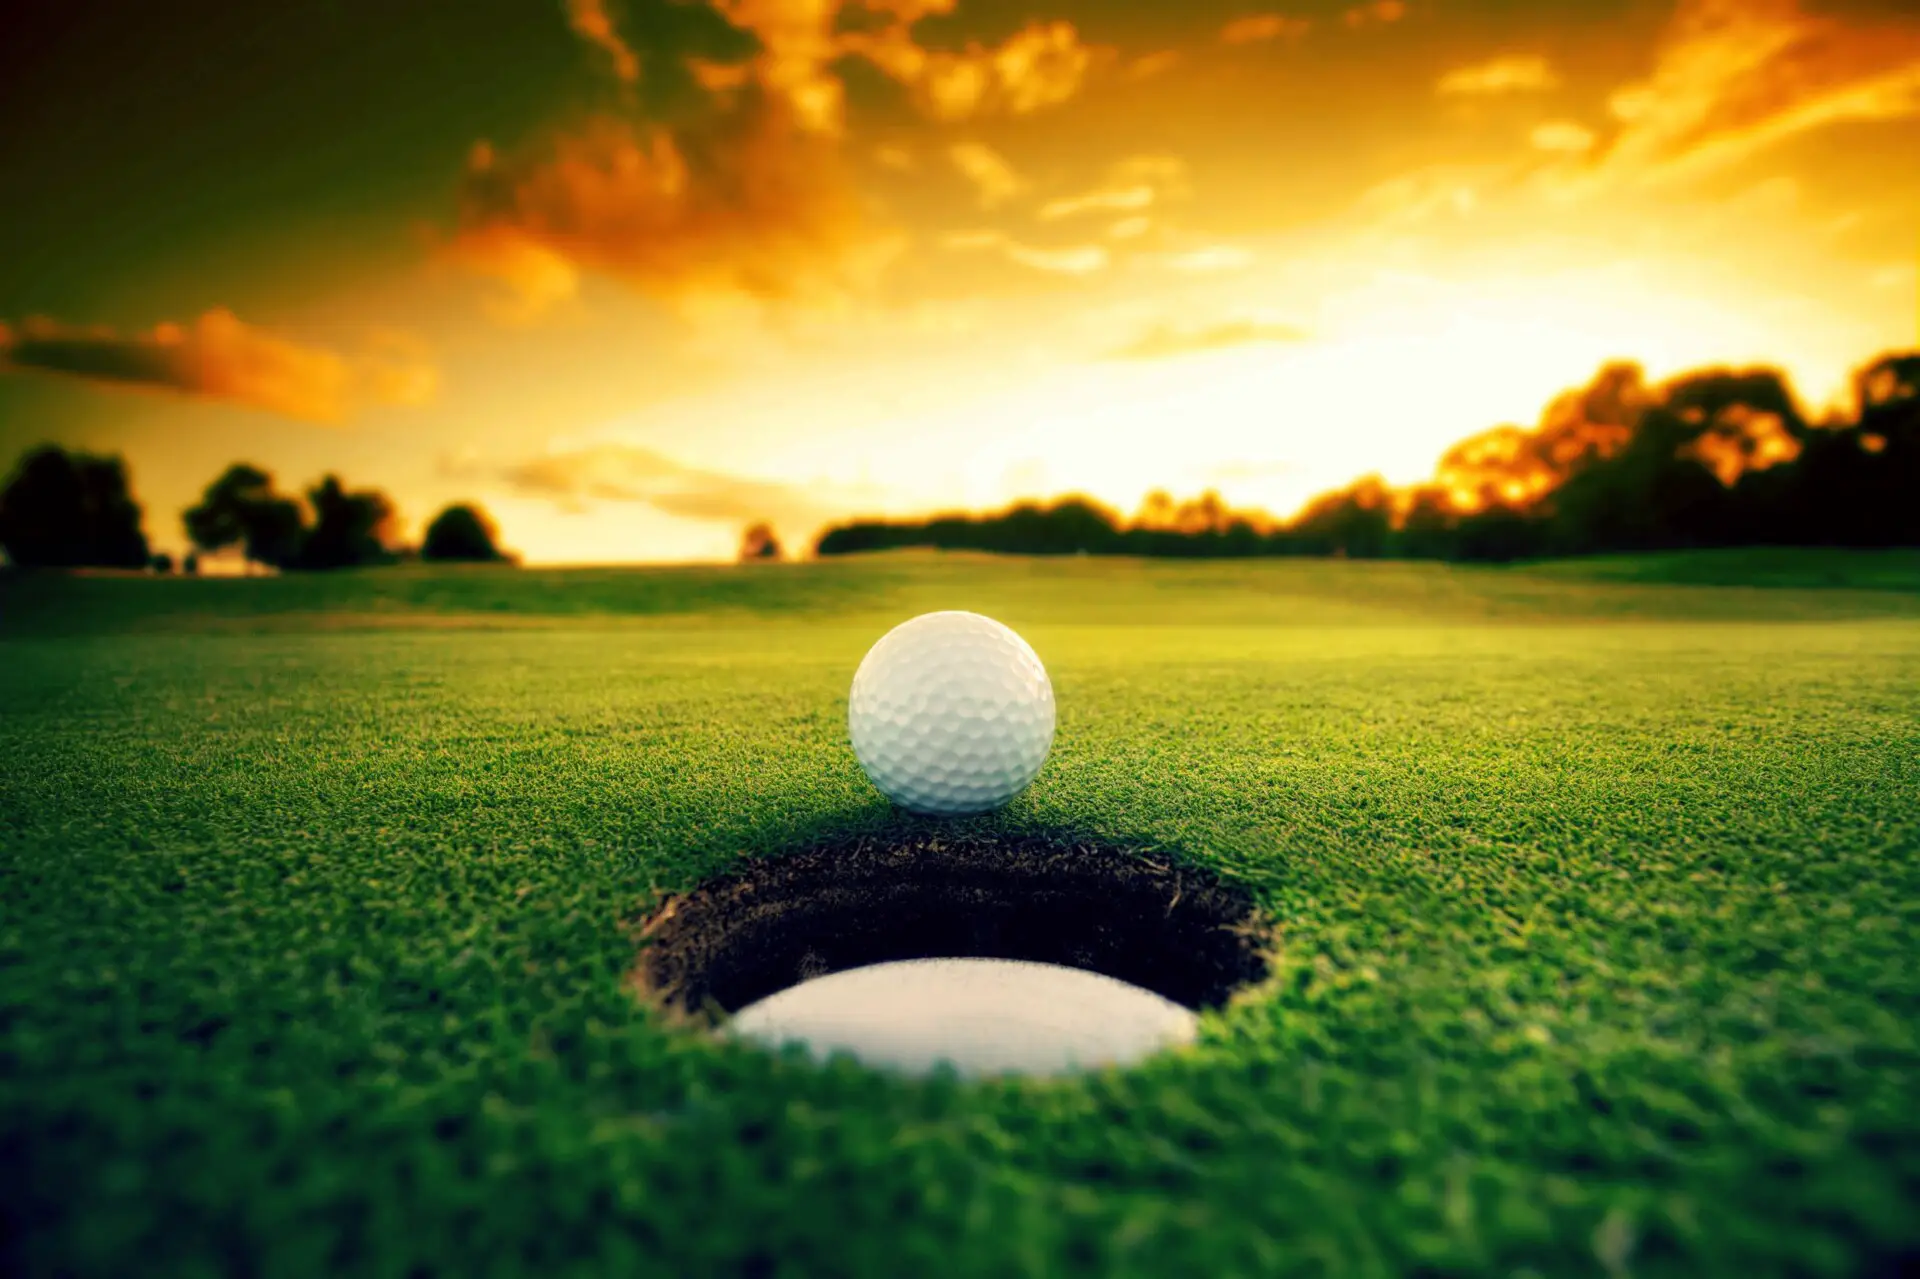 Sind Golfbälle umweltschädlich? (8 wichtige Fakten)